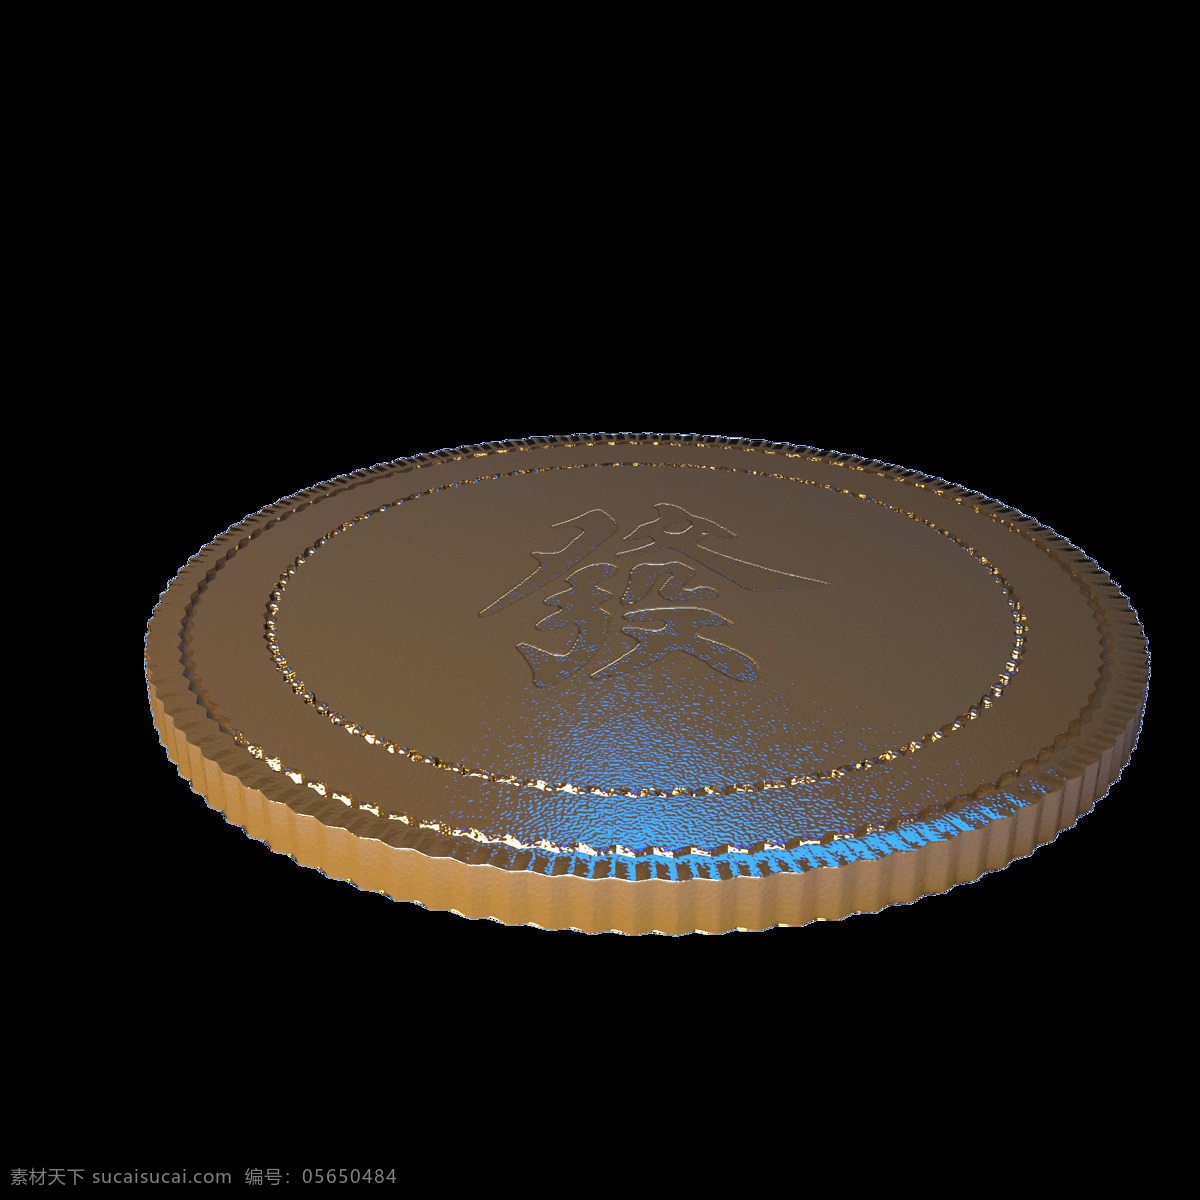 发 字 金币 单个 特写 免抠图 模型 渲染 发财 贵金属 黄金的 贵重的 圆形的 写实的 质感的 硬朗的